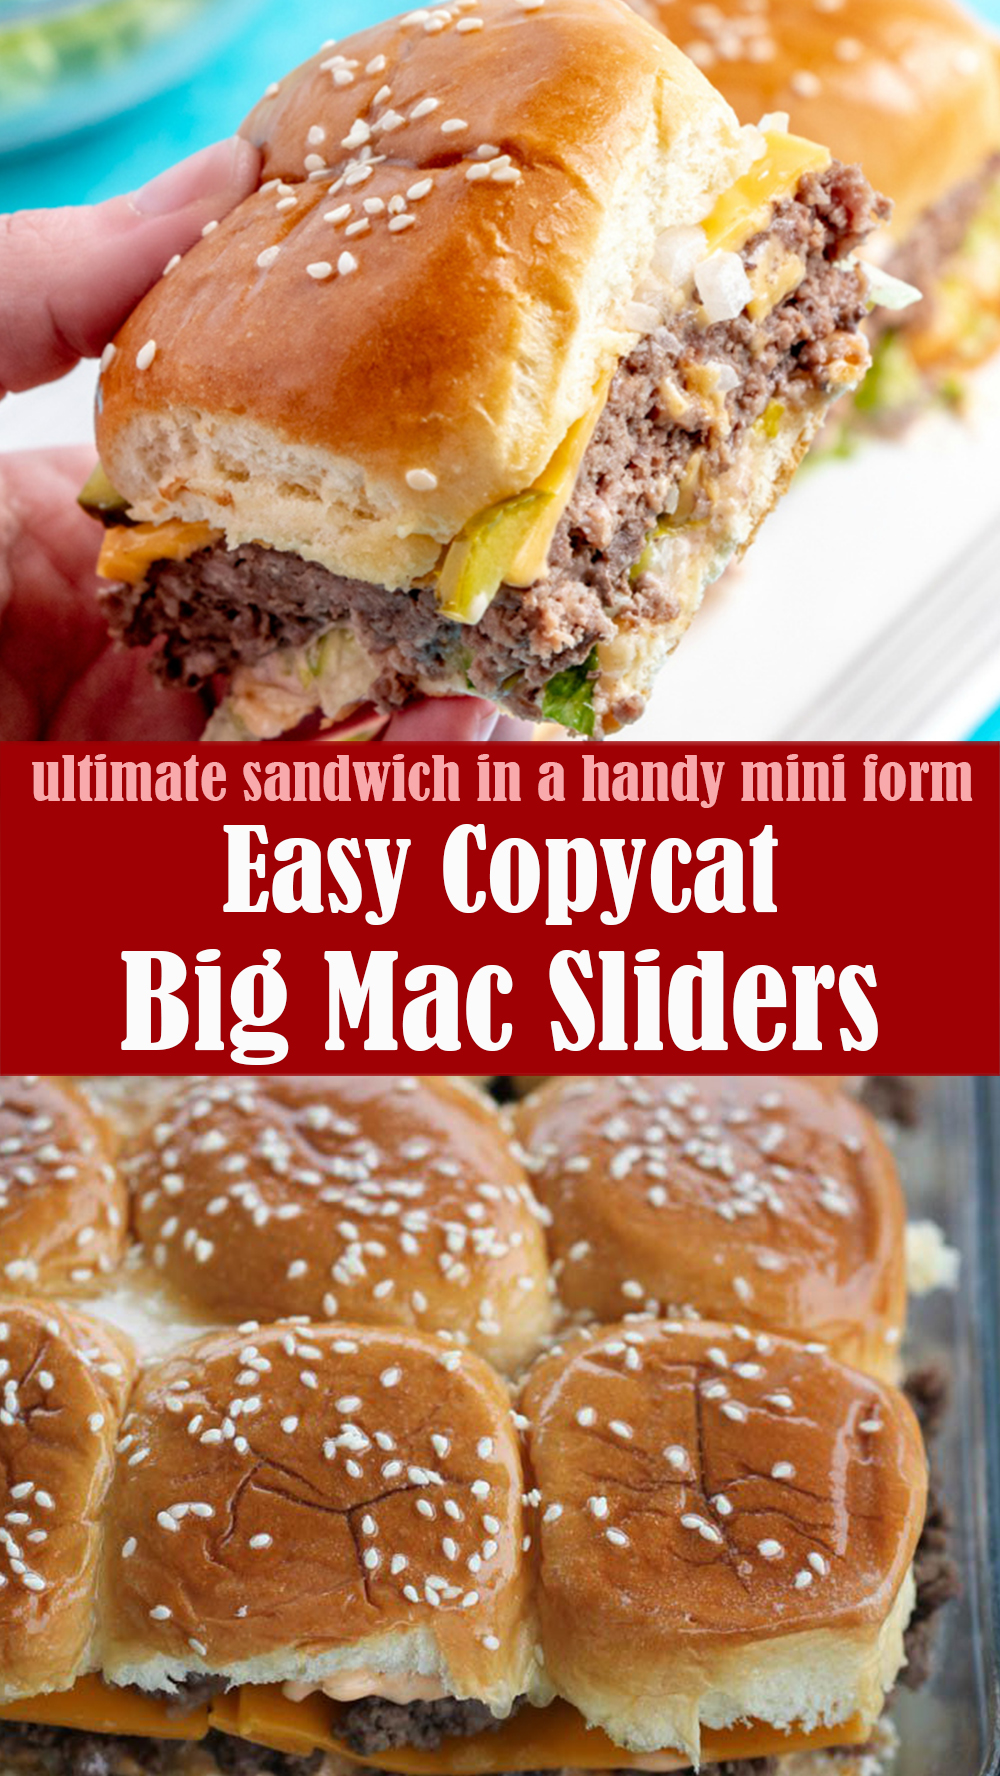 Easy Copycat Big Mac Sliders